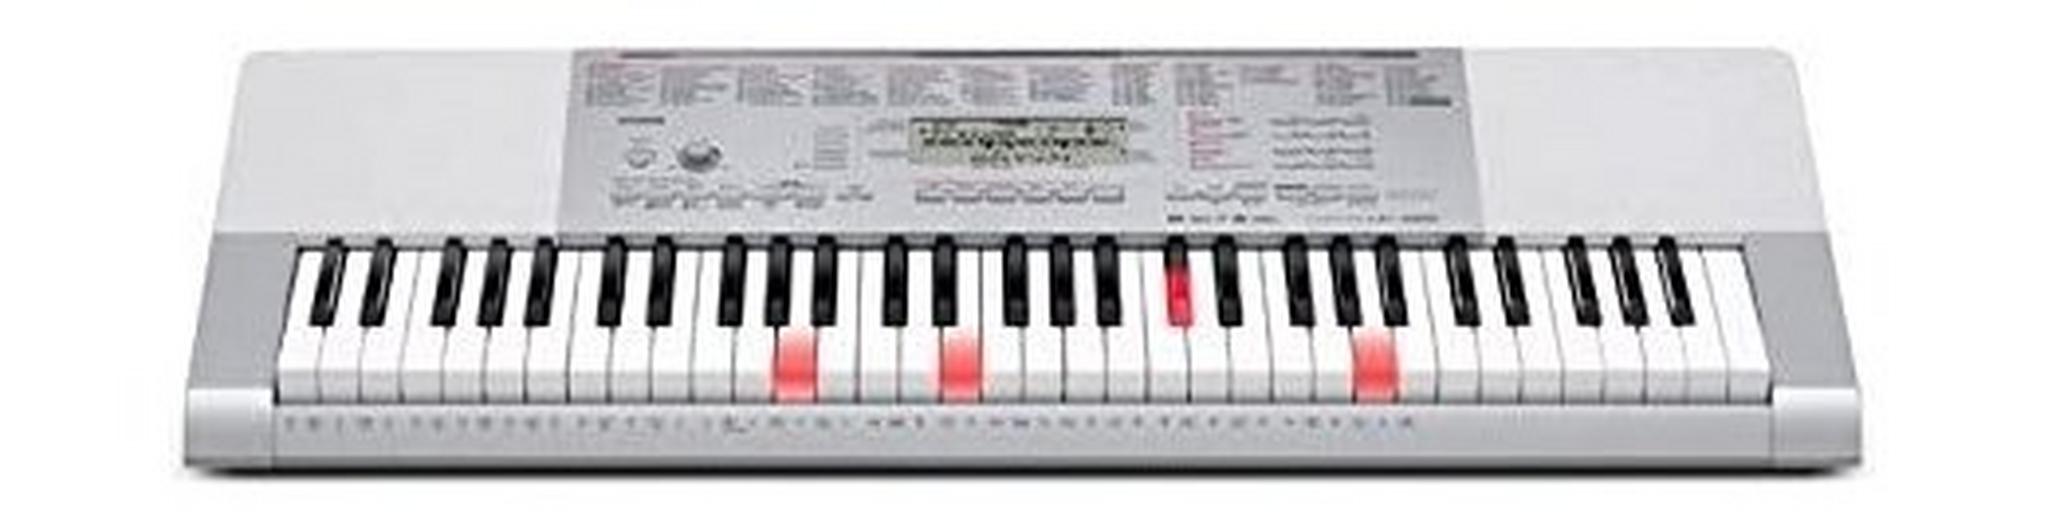 لوحة مفاتيح ذات إضاءة 61 مفتاحاً من كاسيو - LK-280